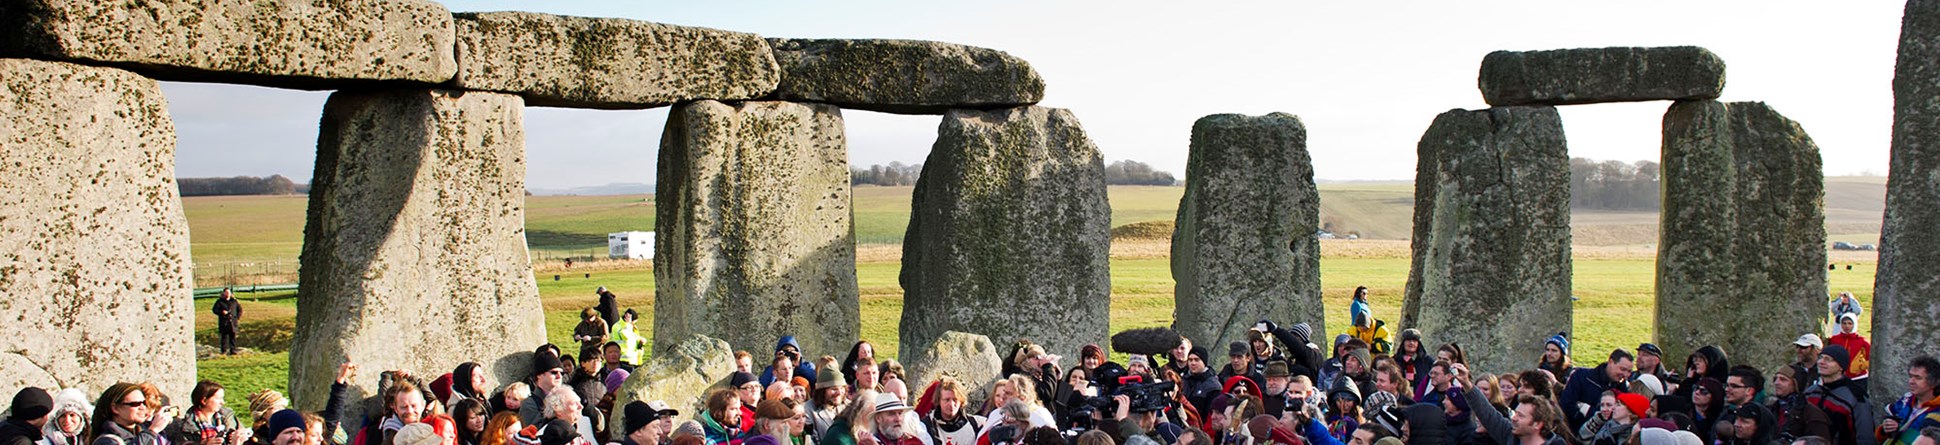 Crowds gathered inside stone circle at Stonehenge